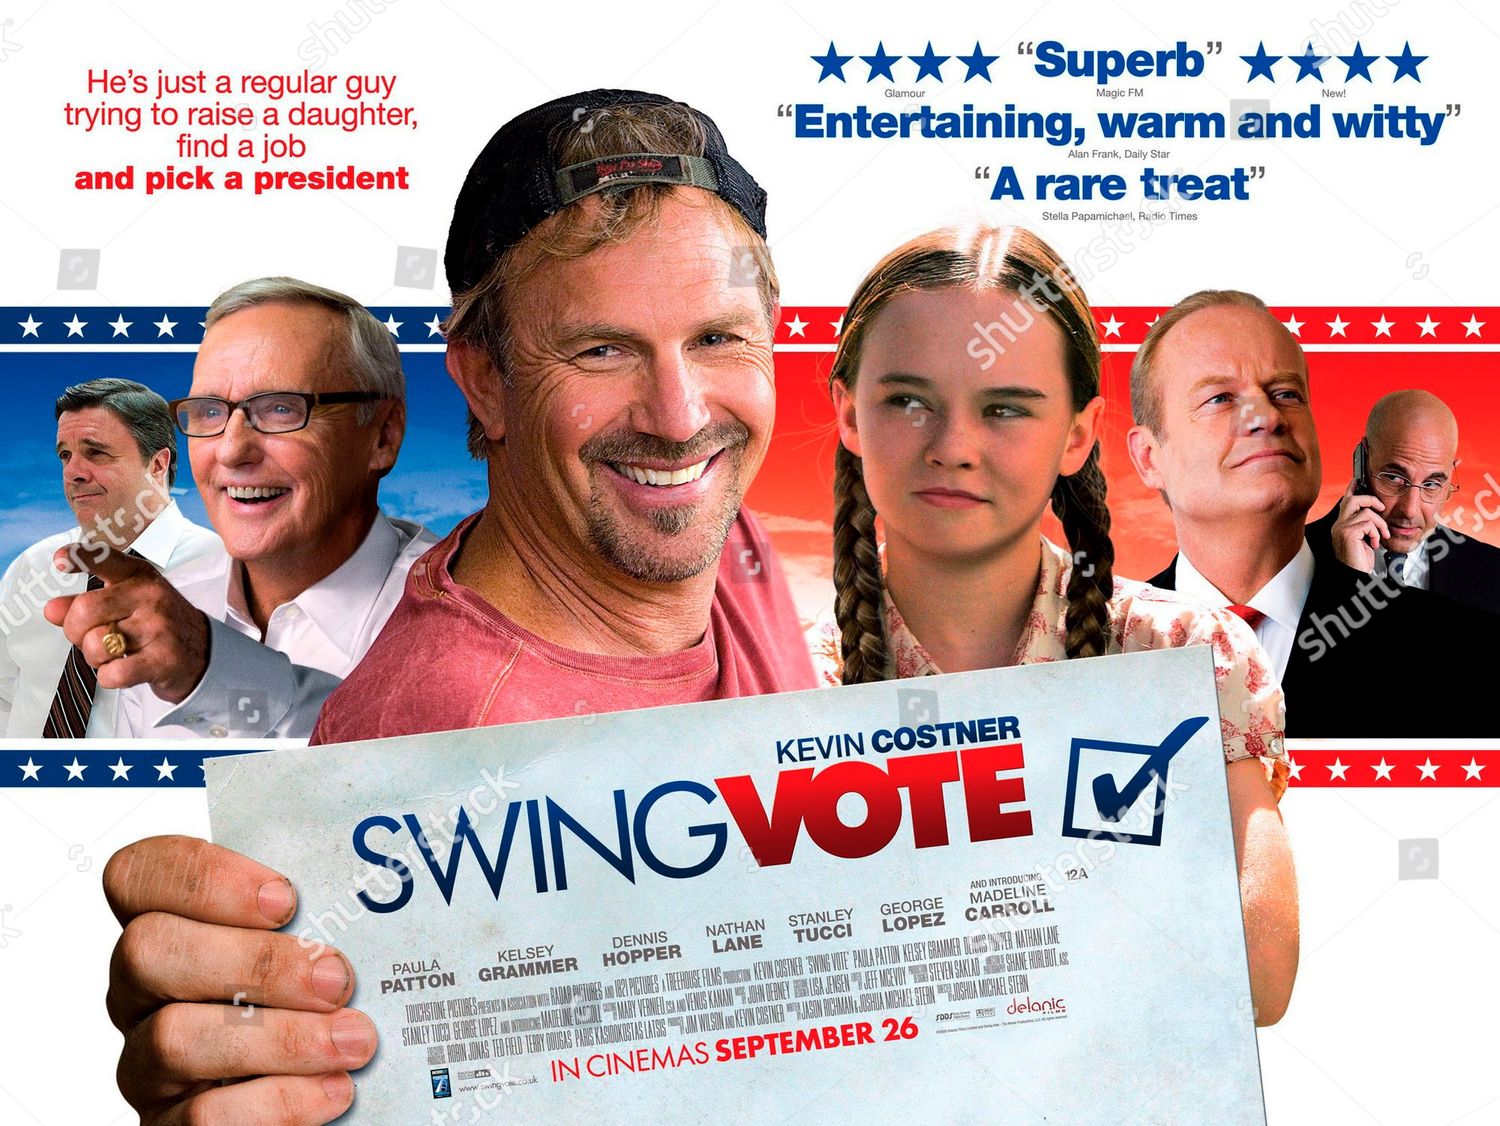 swing-vote-2008-shutterstock-editorial-5884543w.jpg